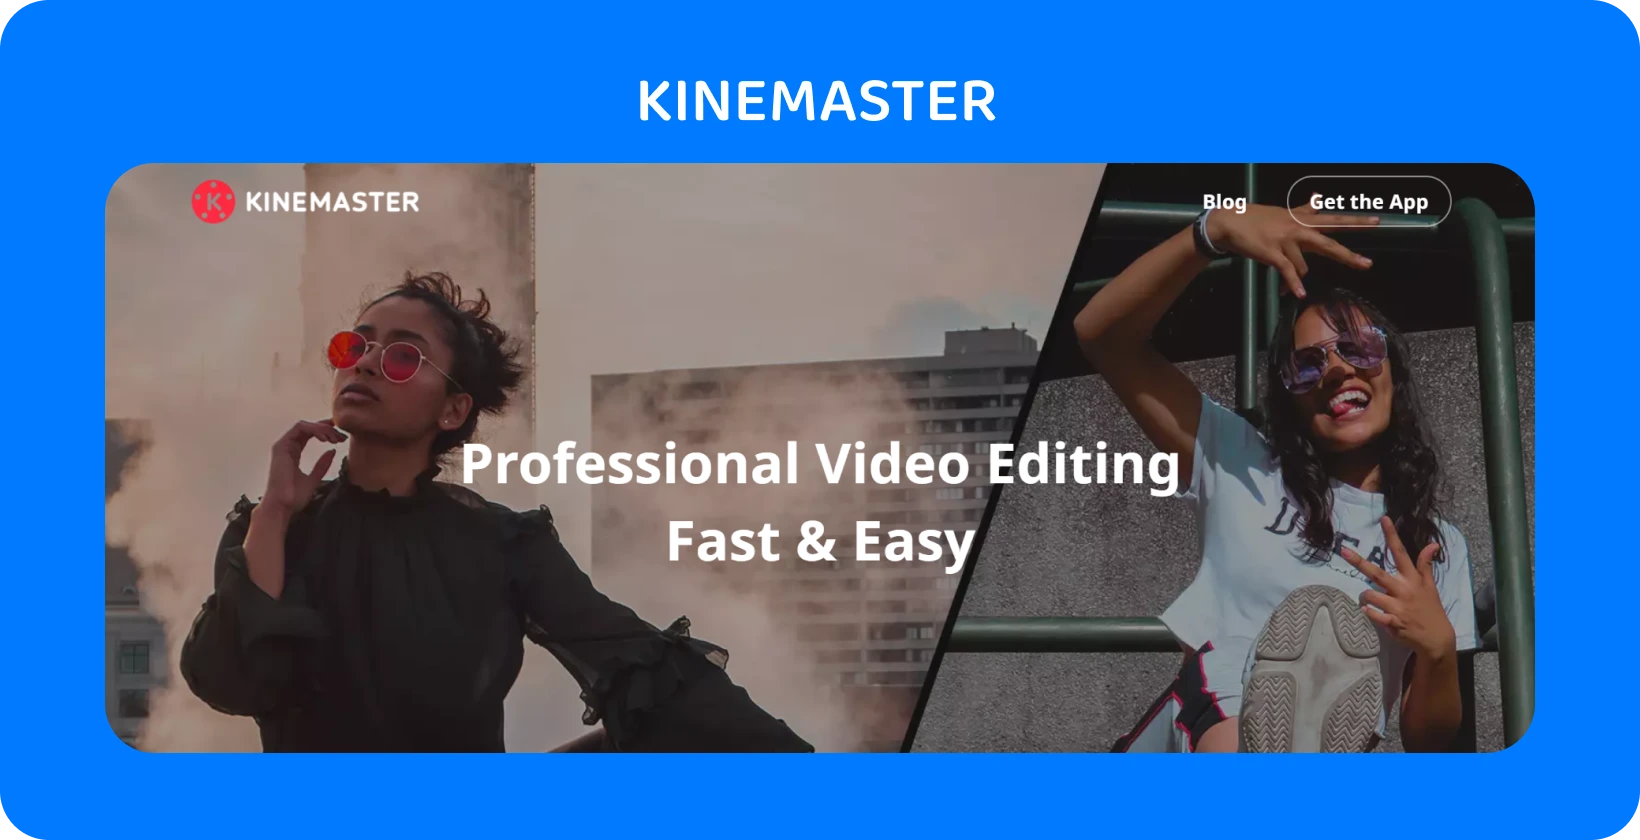 KineMaster إعلان التطبيق مع نموذجين يتظاهران ، مع تسليط الضوء على تحرير الفيديو الاحترافي السريع والسهل.